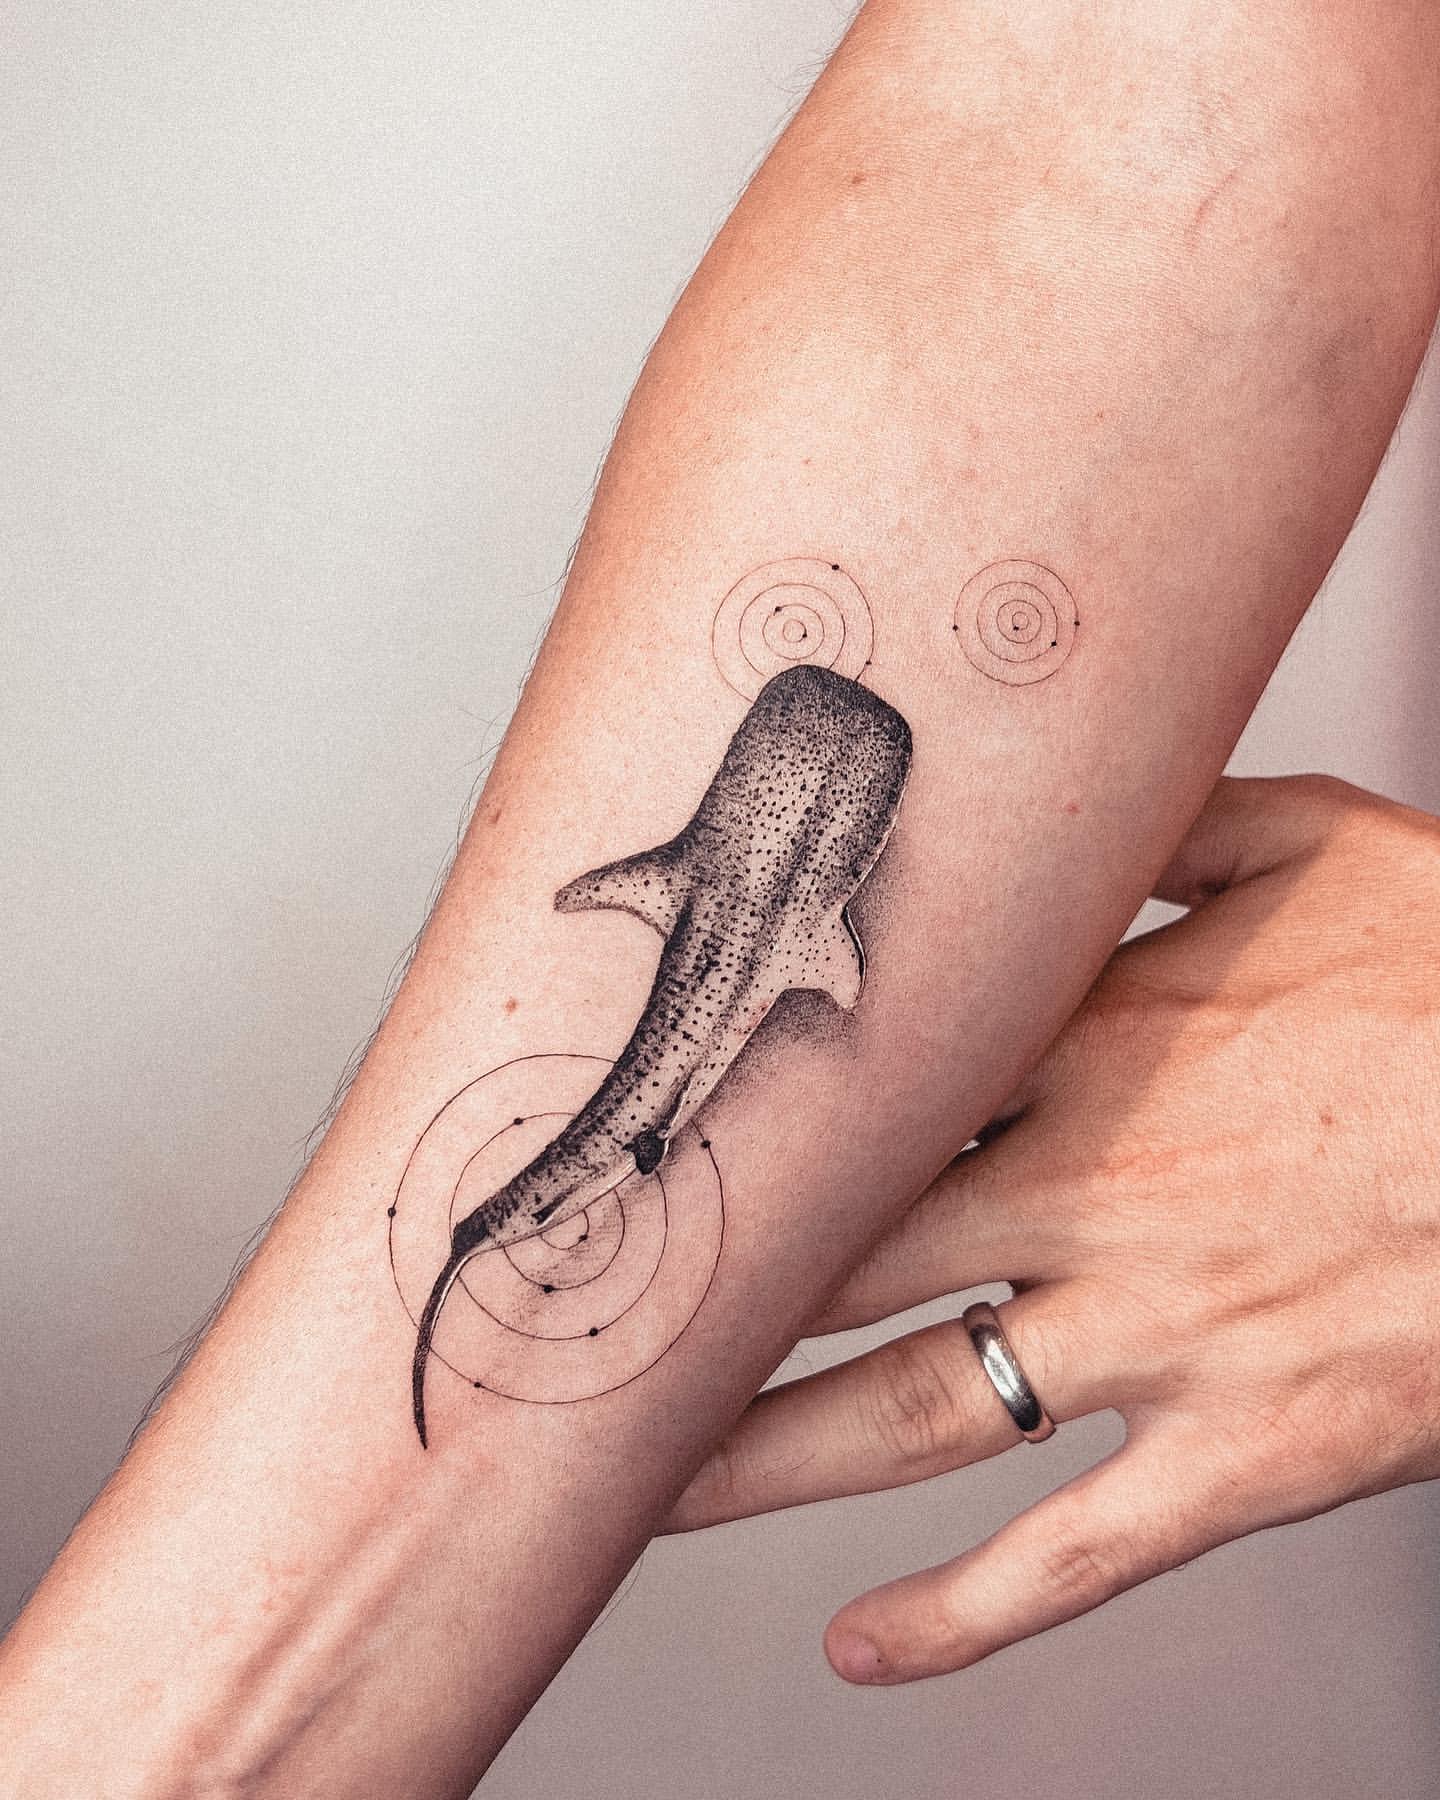 Marine life tattoos